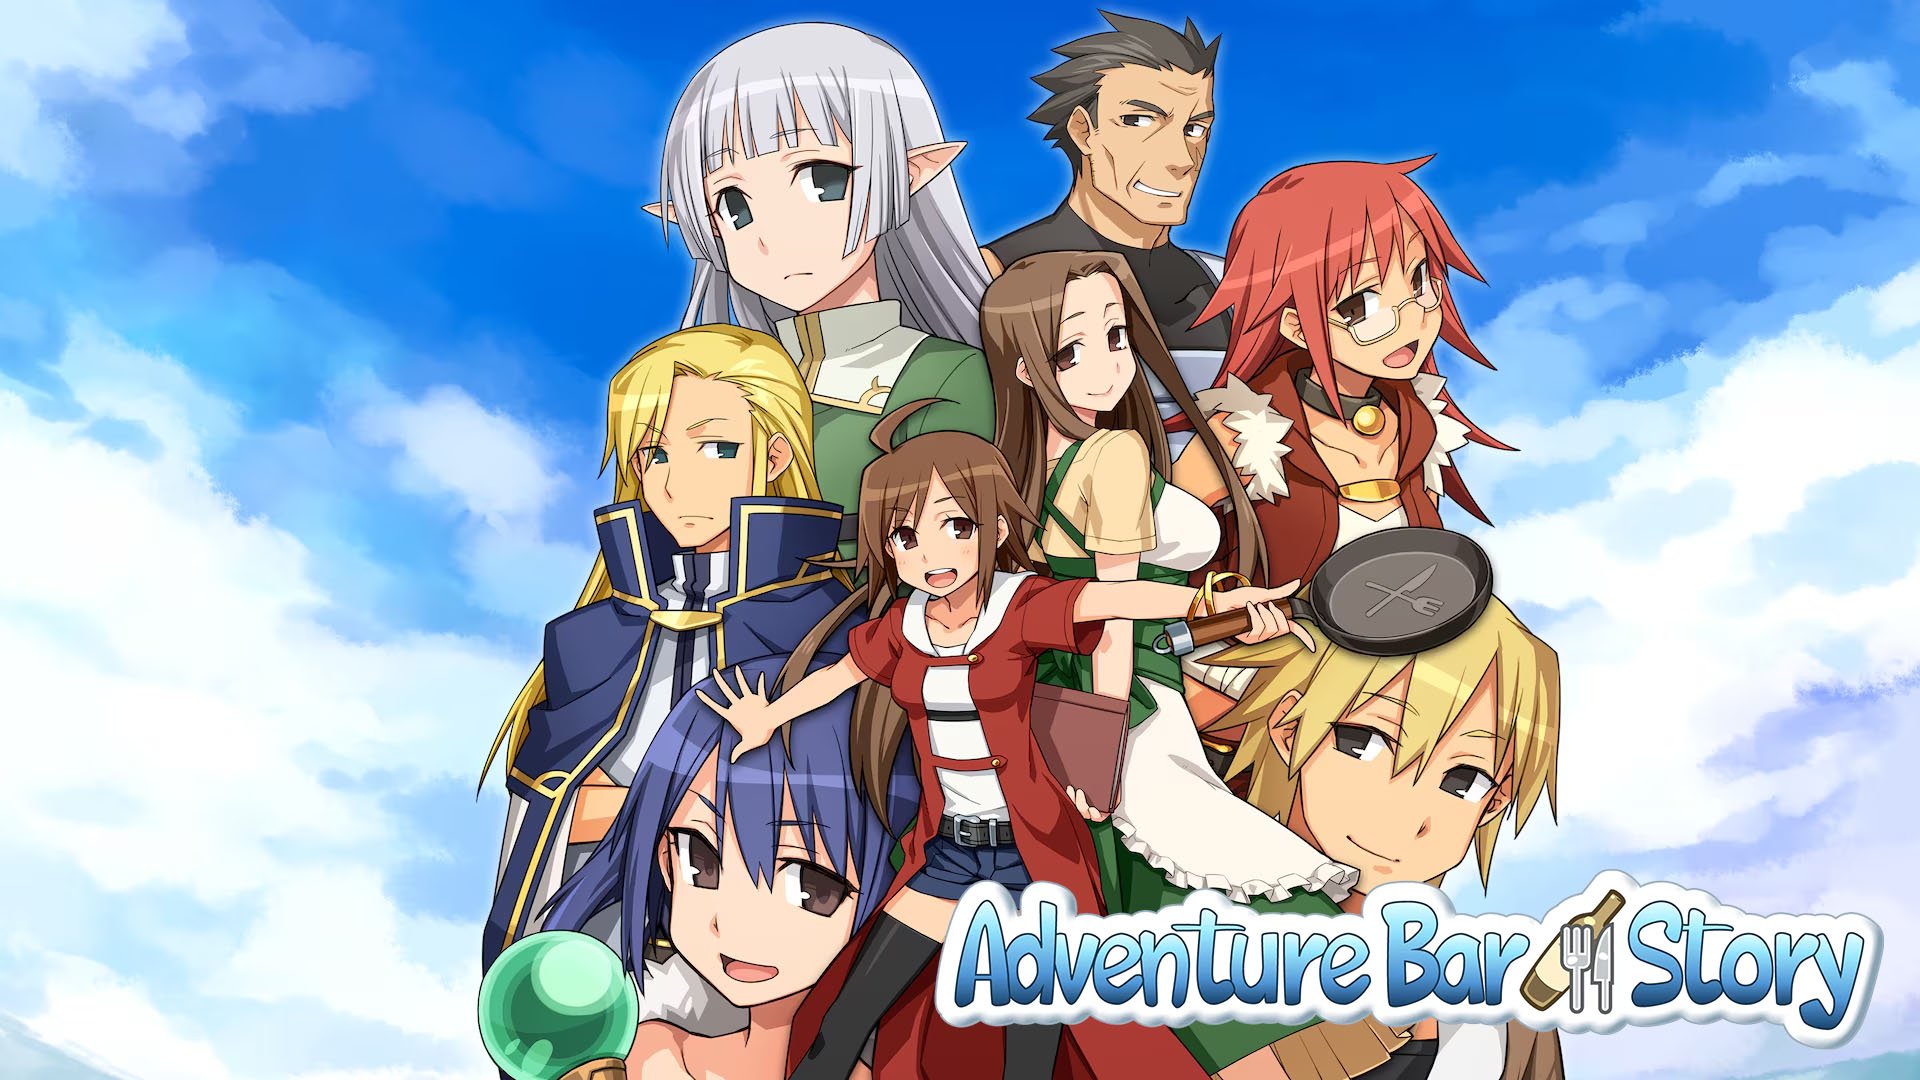 Adventure Bar Story agora disponível mundialmente para PS5 e PS4